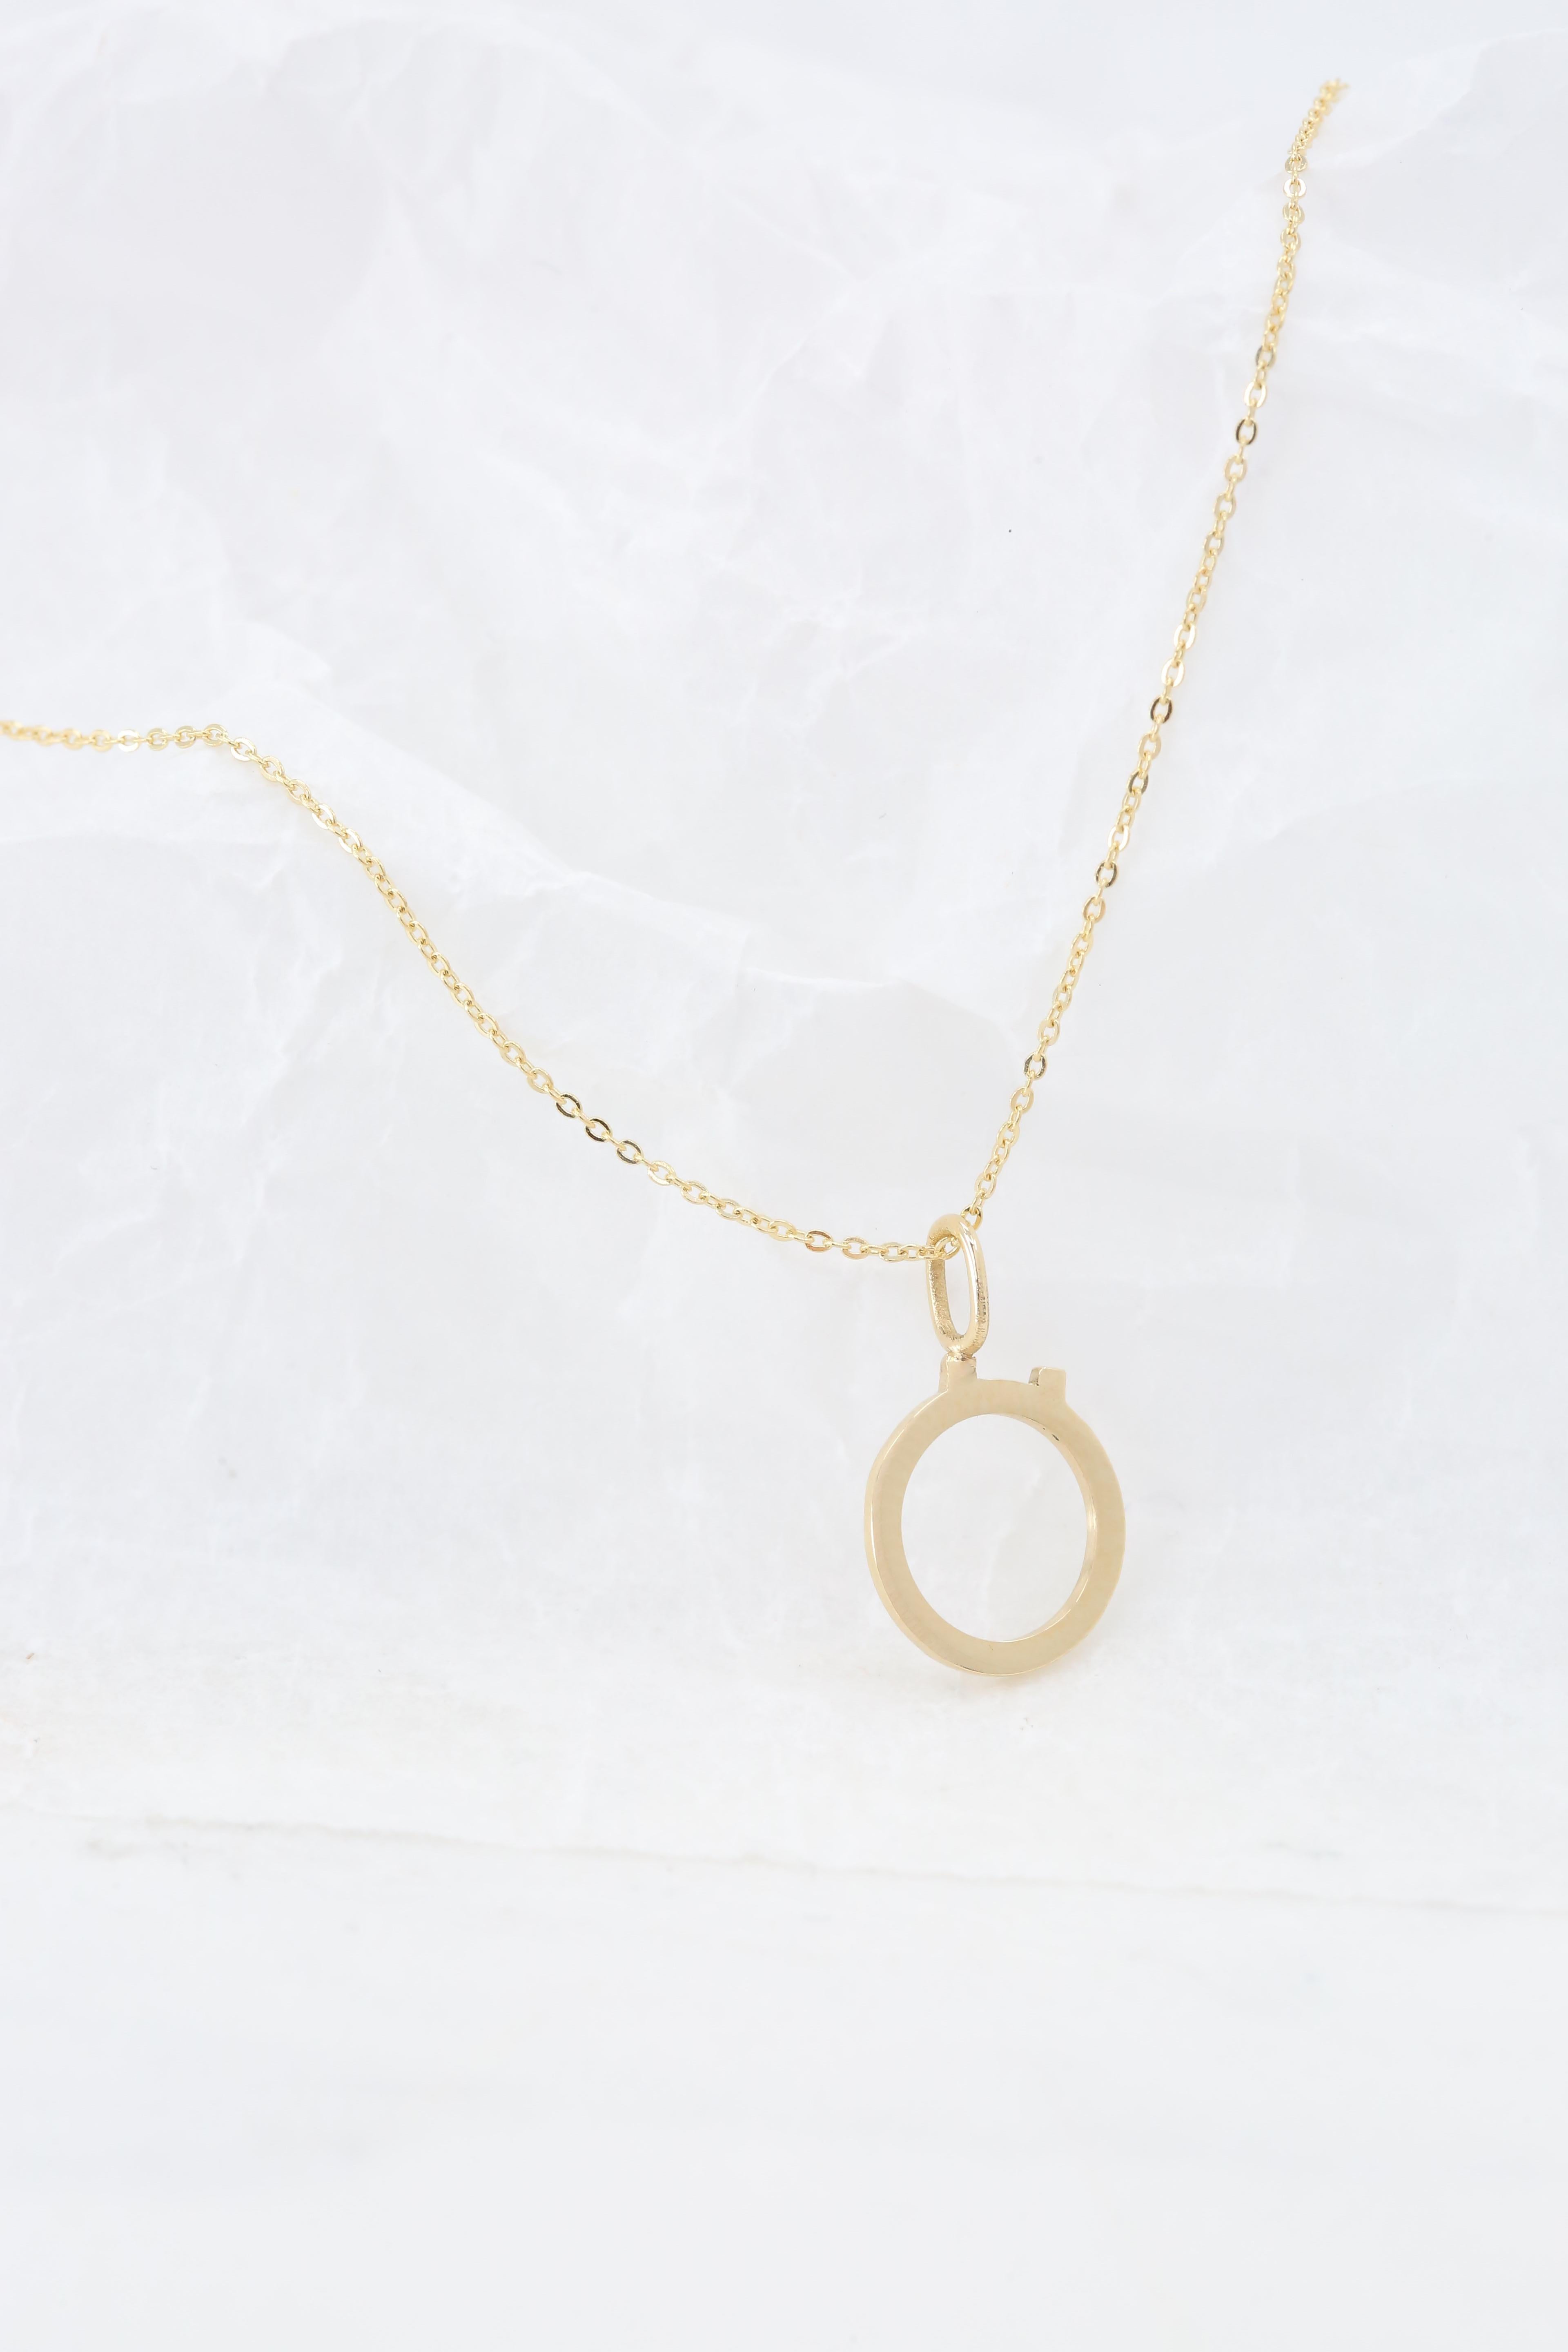 Modern 14k Gold Necklaces, Letter Necklace Models, Letter Ö Gold Necklace-Gift Necklace For Sale